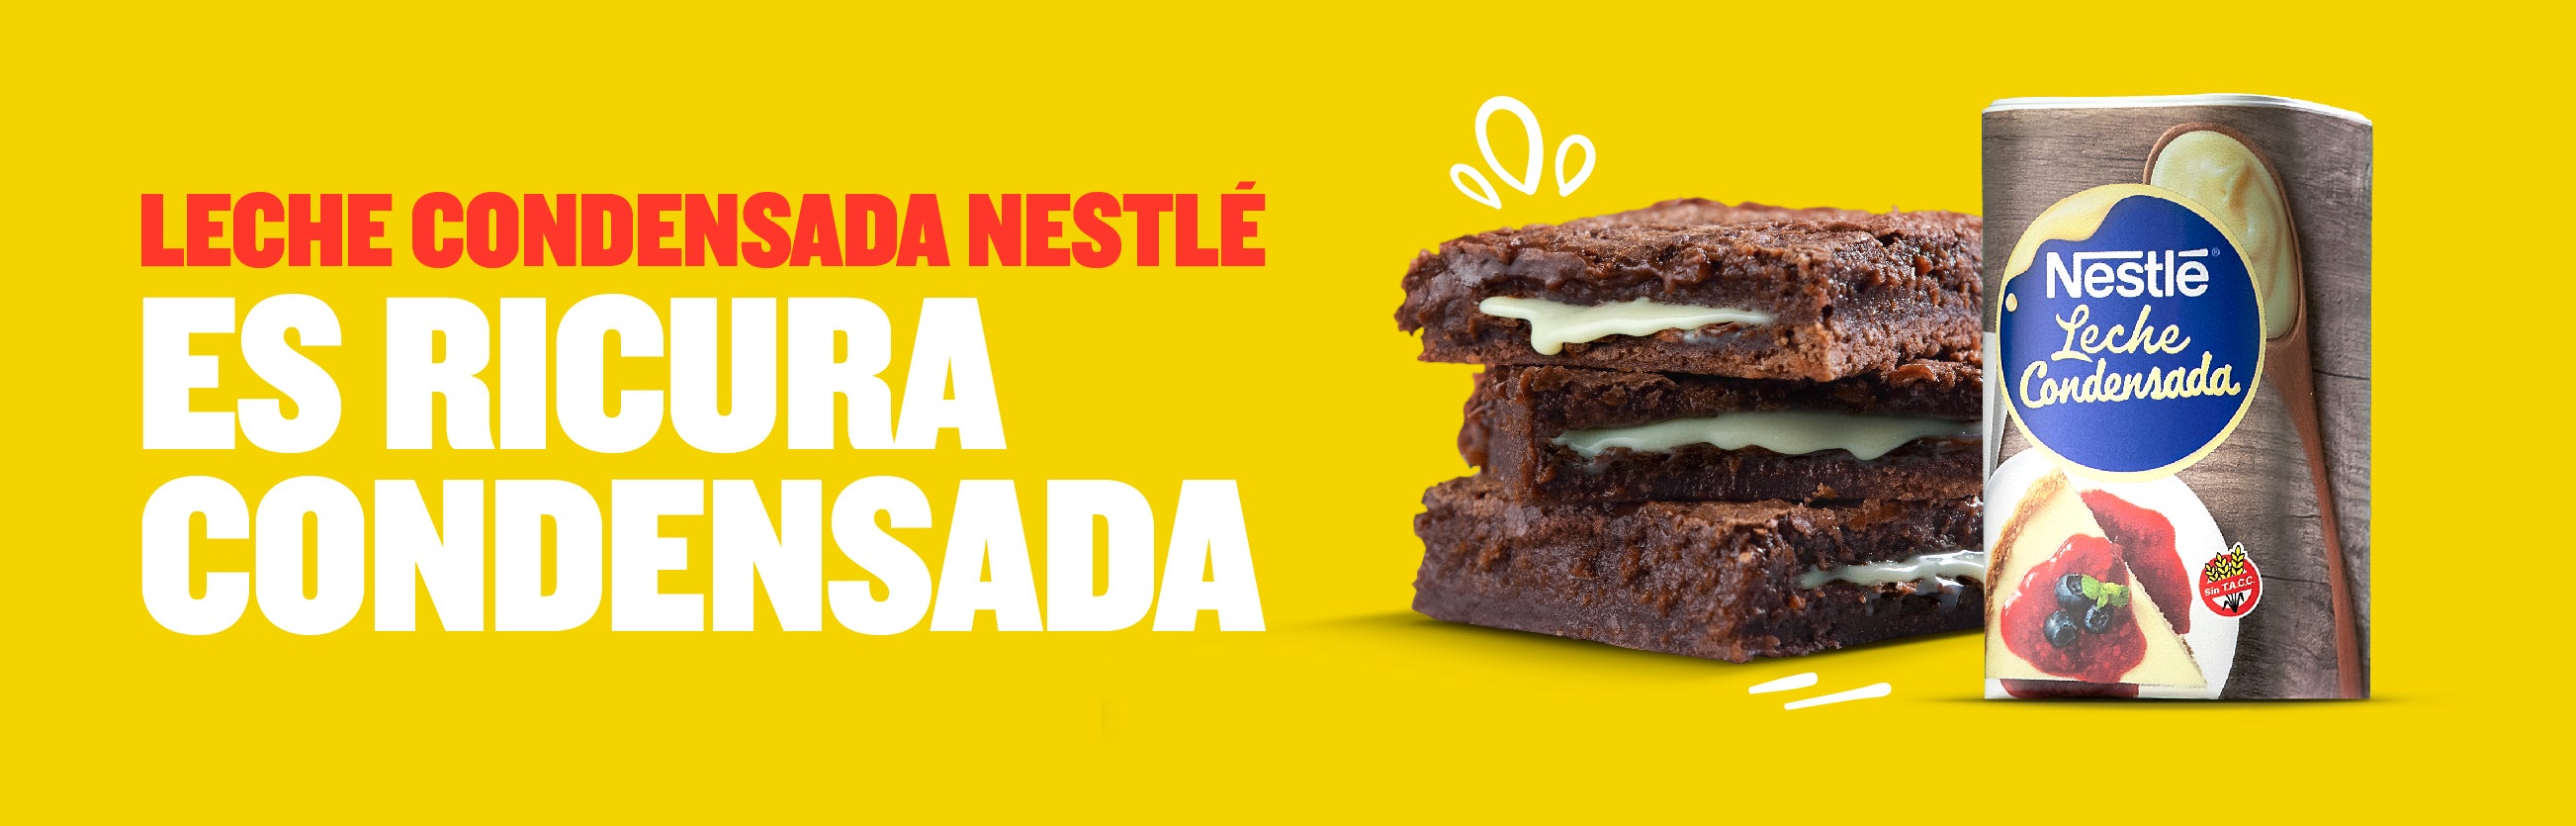 Por qué comprar Leche Condensada Nestlé®? | Recetas Nestlé